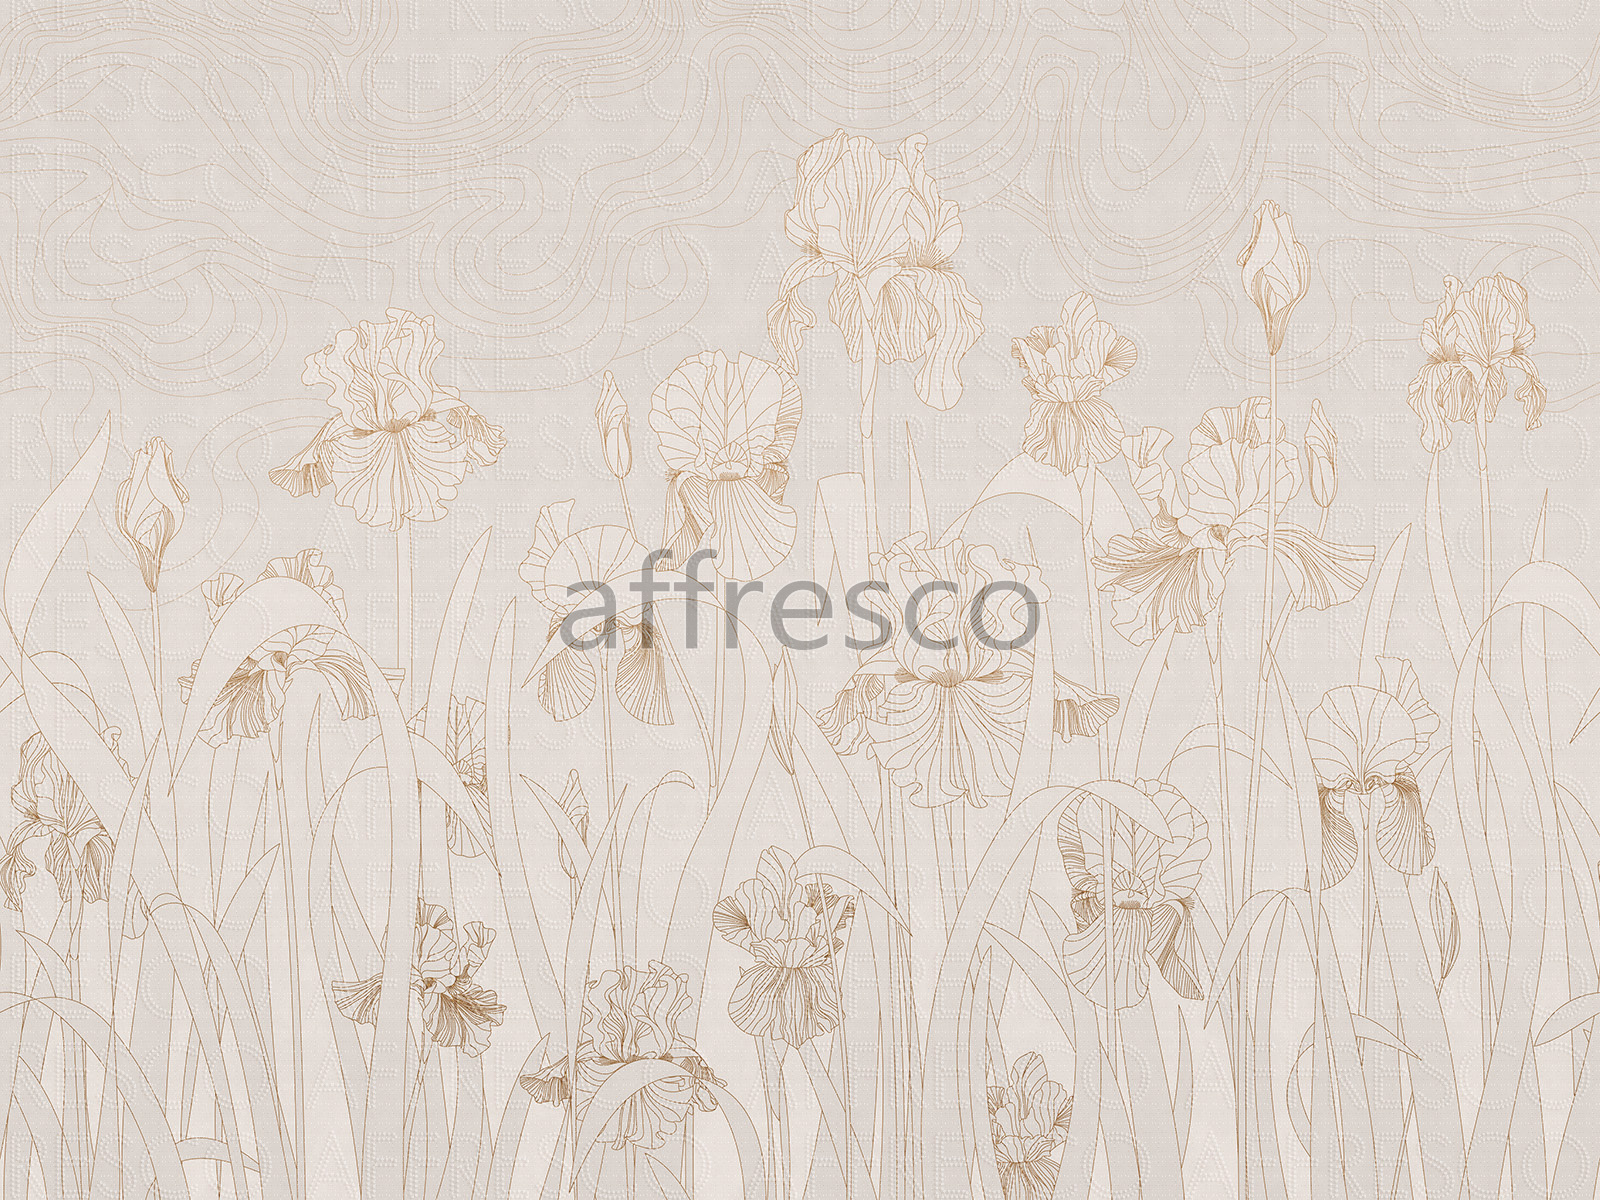 AF2139-COL1 | Line Art | Affresco Factory